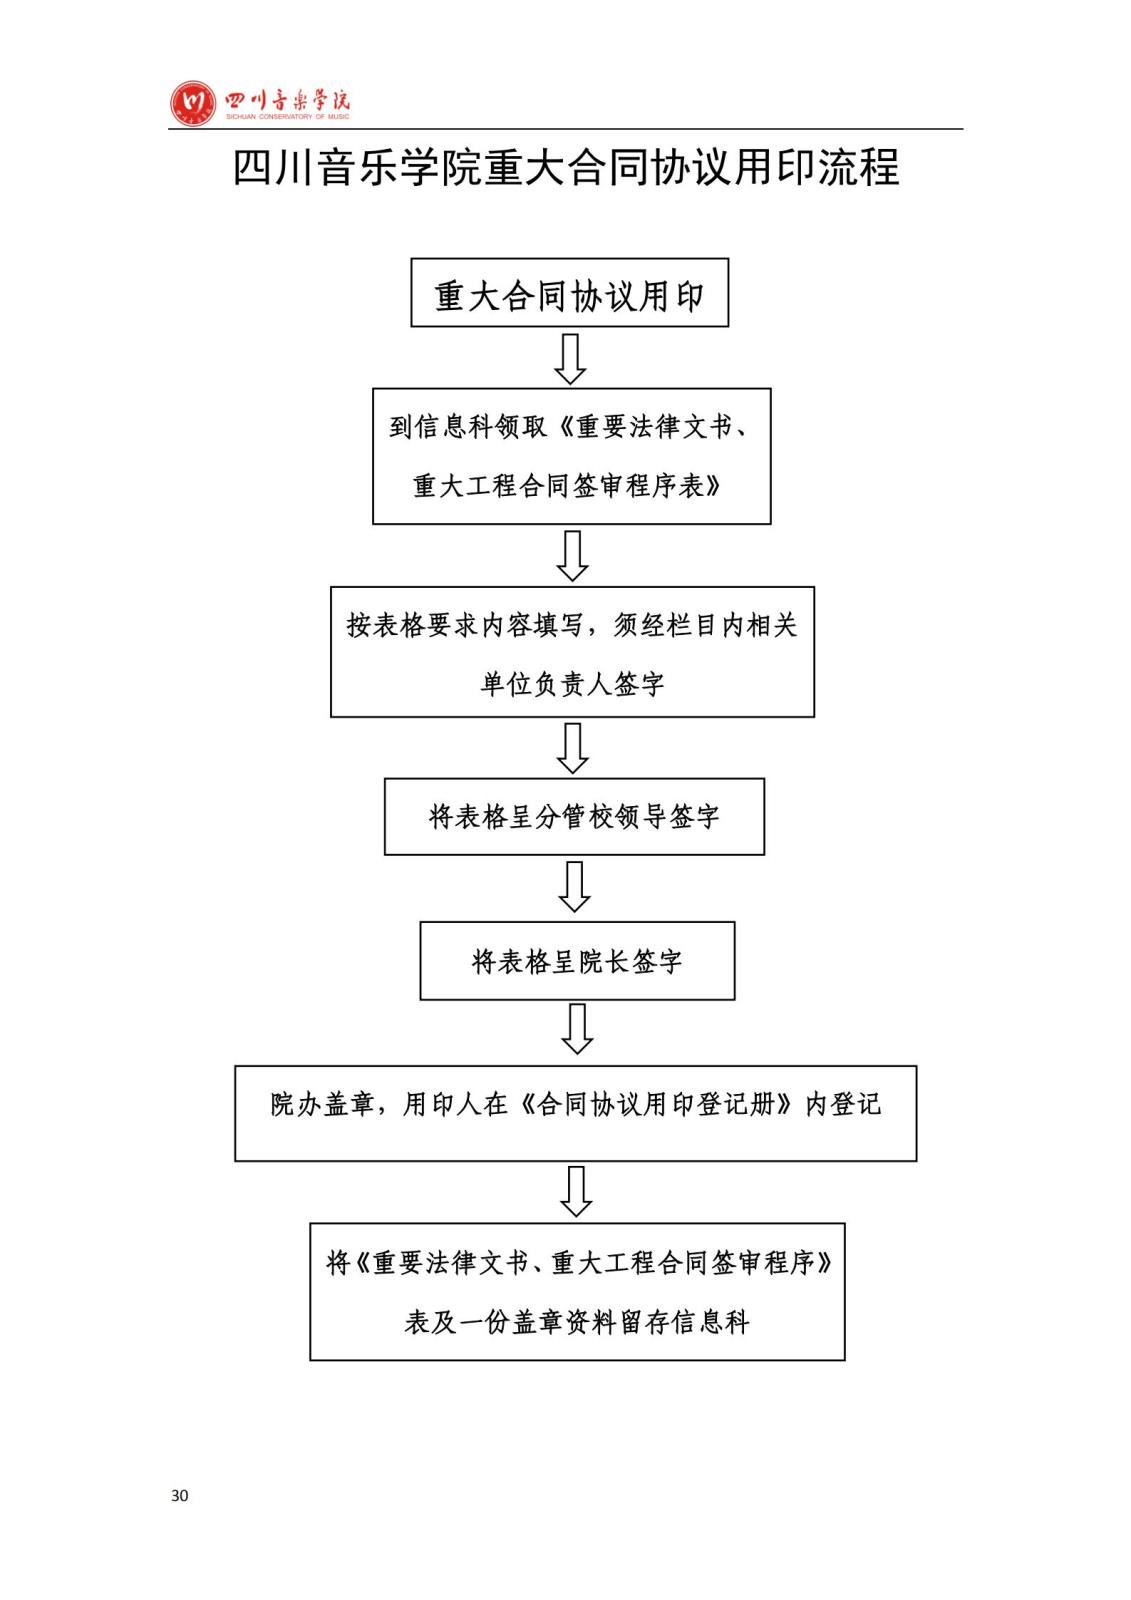 四川音乐学院学院办公室规章制度汇编_32.jpg